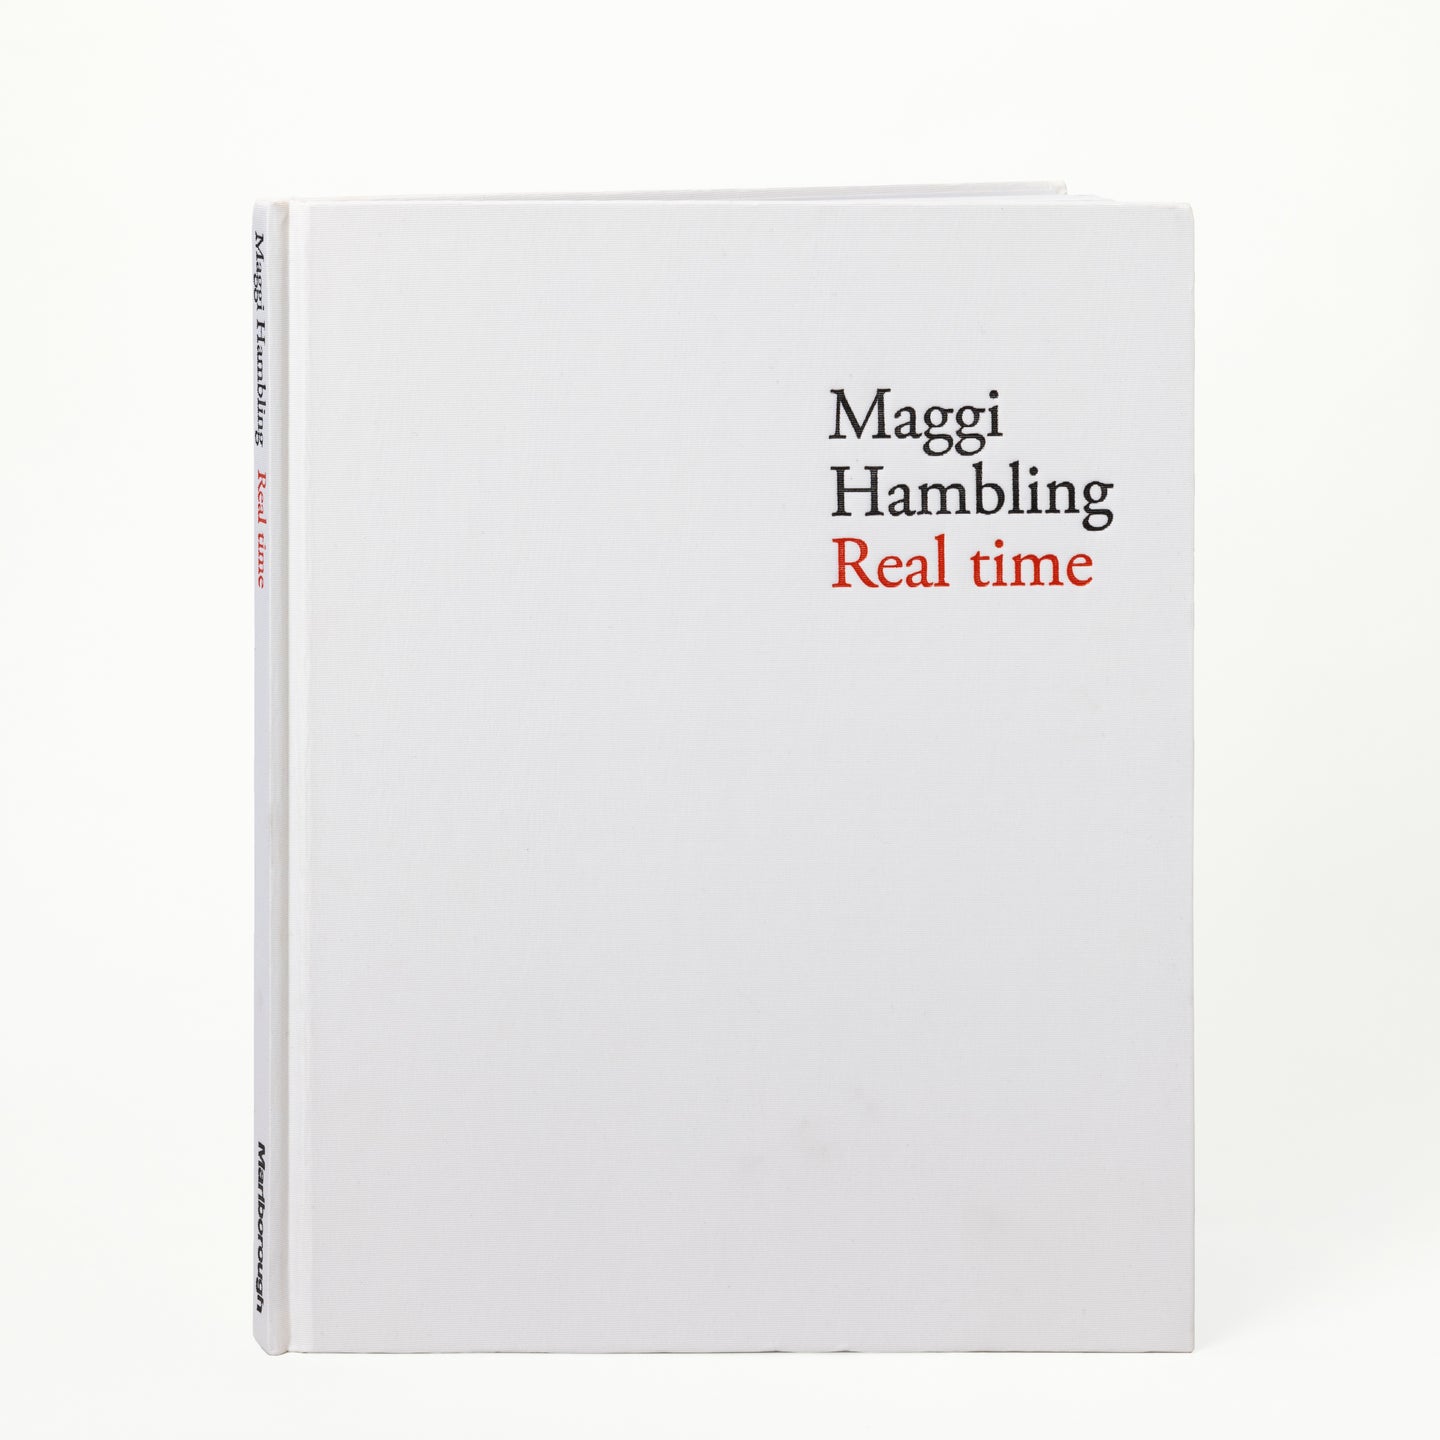 Maggi Hambling: Real time